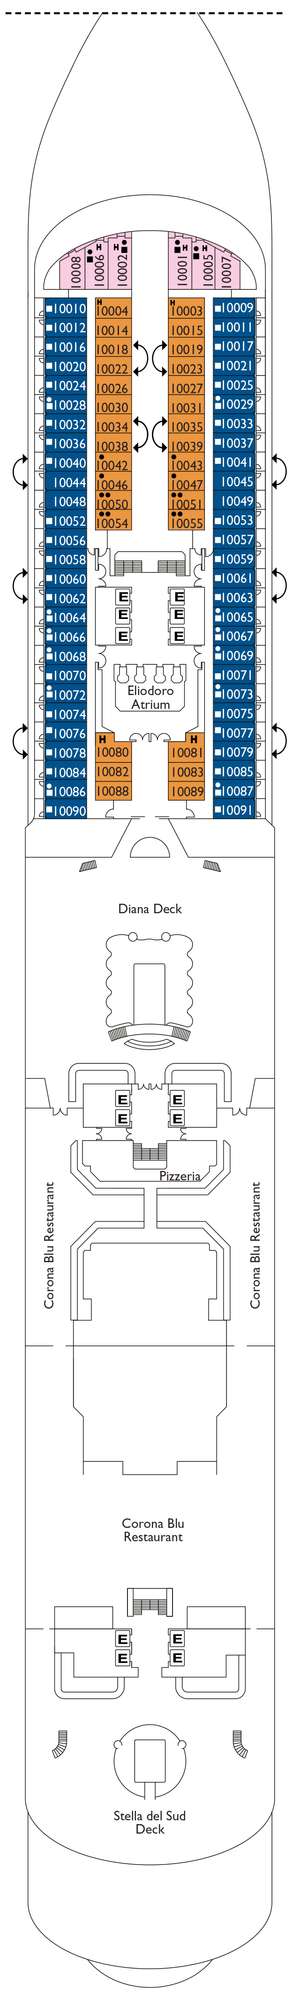 Deck plan for Costa Diadema